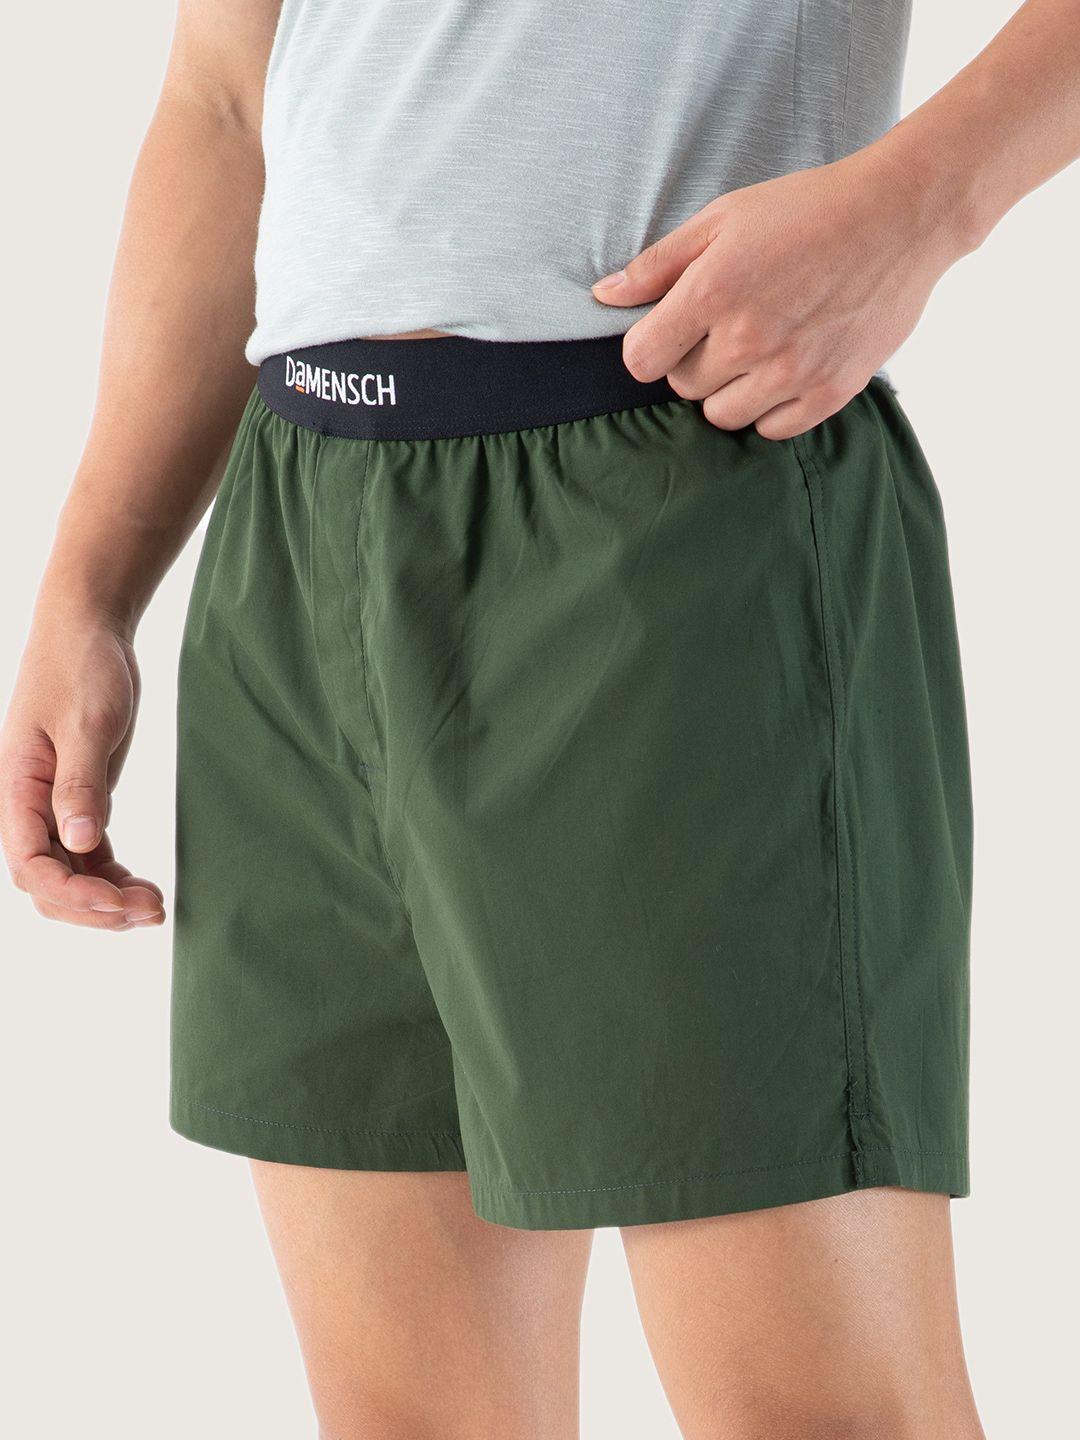 damensch-men-ultra-light-cotton-regular-fit-boxers--dam-sld-sbx-ryg